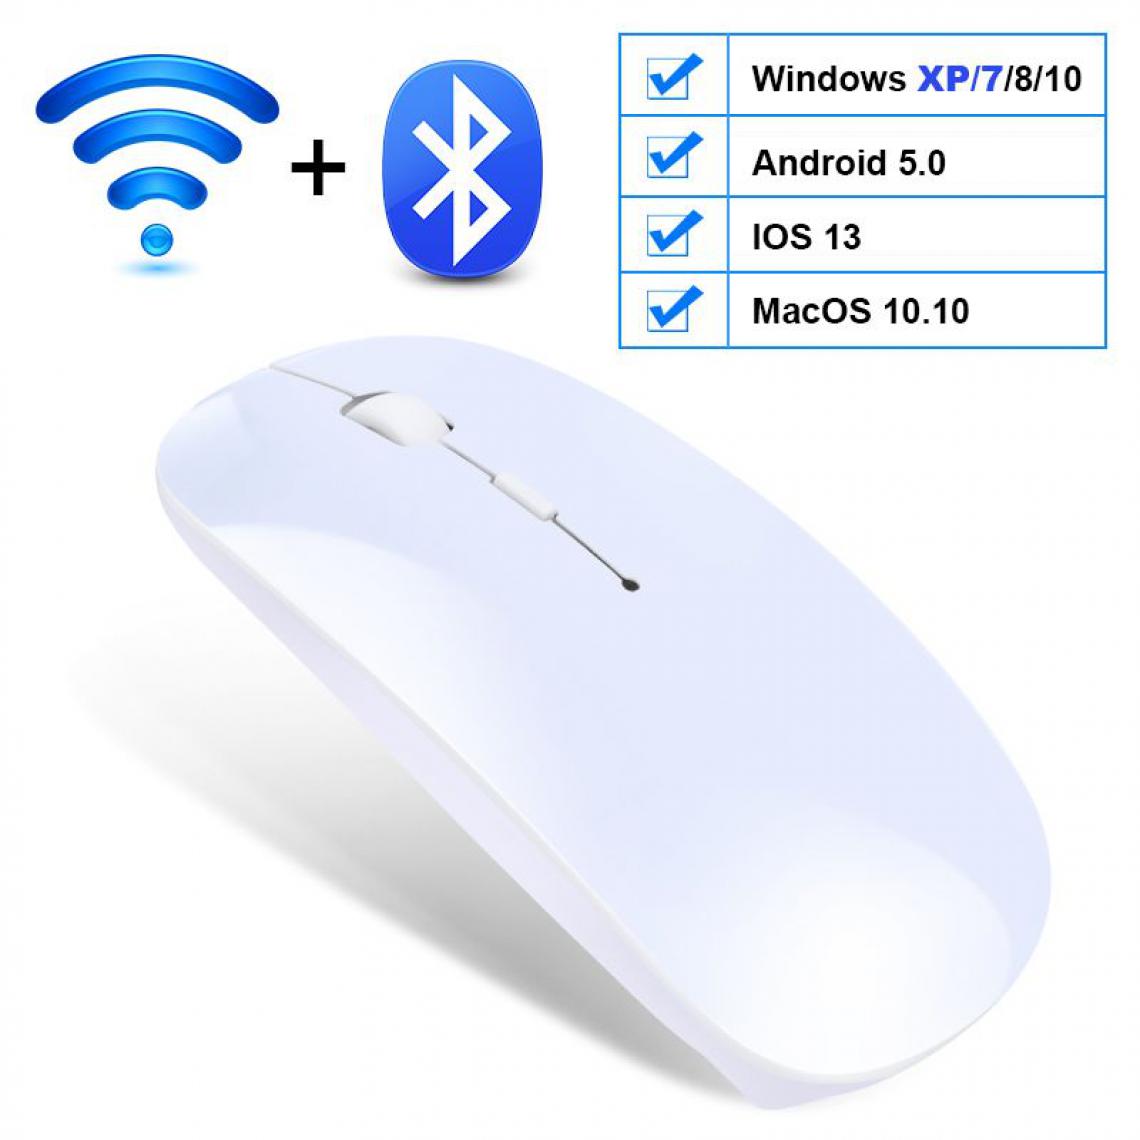 Generic - Souris sans fil, USB Bluetooth 2.4Ghz, silencieux, ergonomique et  rechargeable , compatible Windows / Android / IOS 13 /  Mac OS  , 11.2 * 5.7 * 2 cm -  Blanc  - Souris